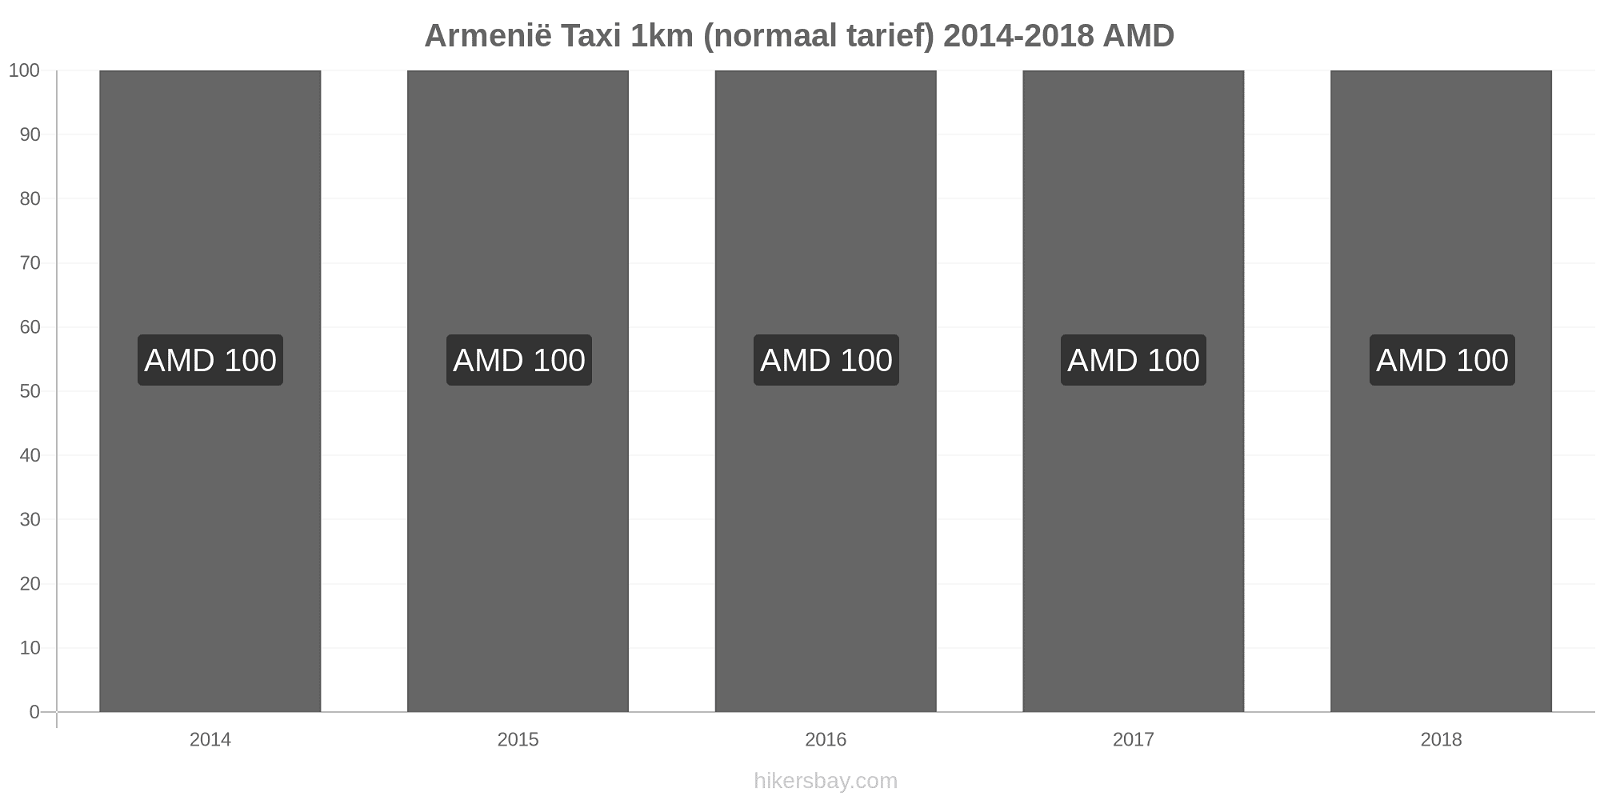 Armenië prijswijzigingen Taxi 1km (normaal tarief) hikersbay.com